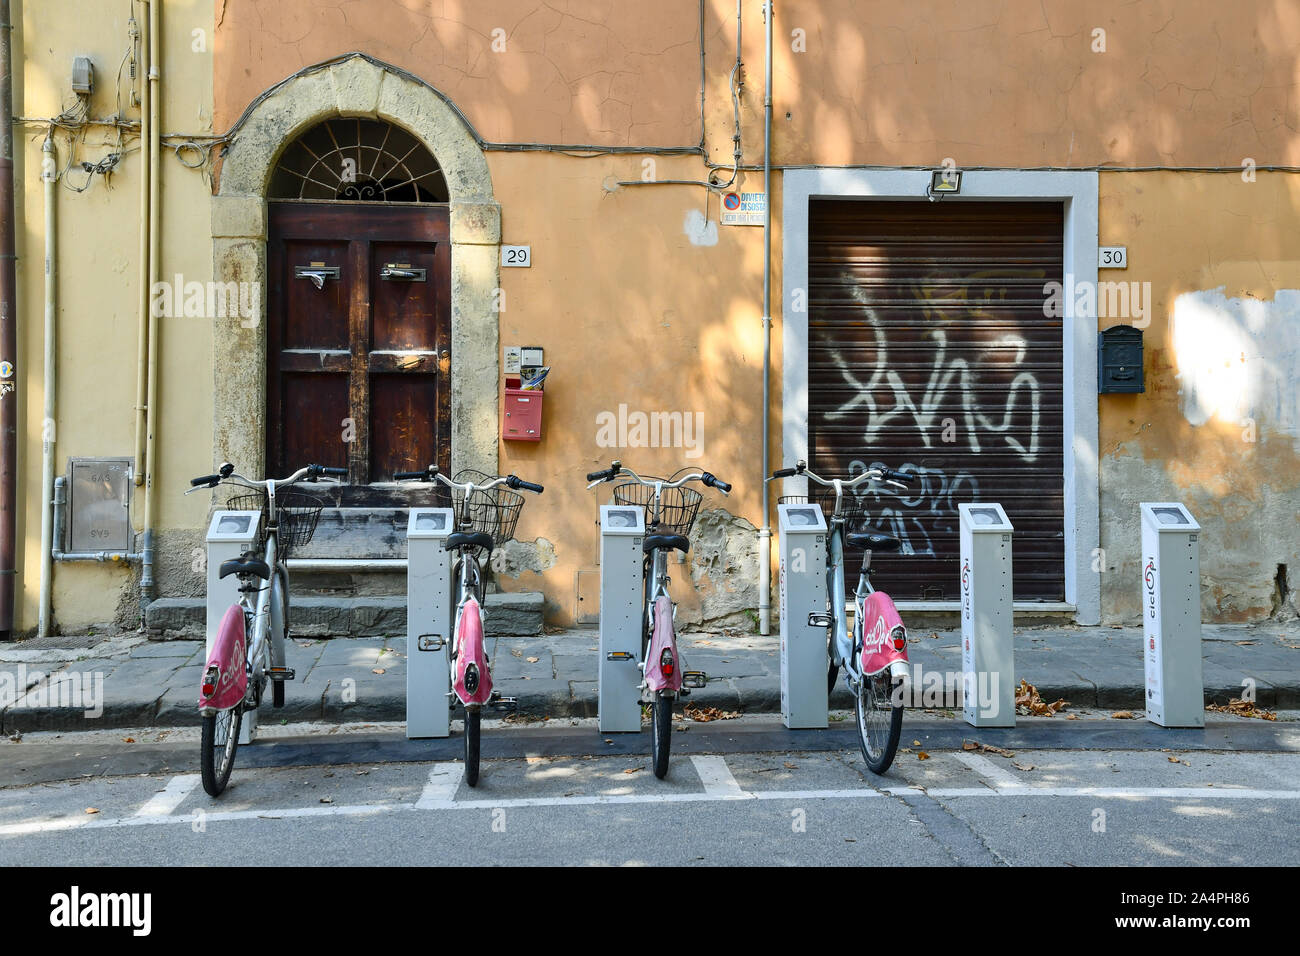 Zeile der öffentlichen Fahrräder, die zu einem Bike Sharing Station vor einem alten Gebäude im historischen Zentrum der berühmten Stadt Pisa, Toskana, Italien geparkt Stockfoto